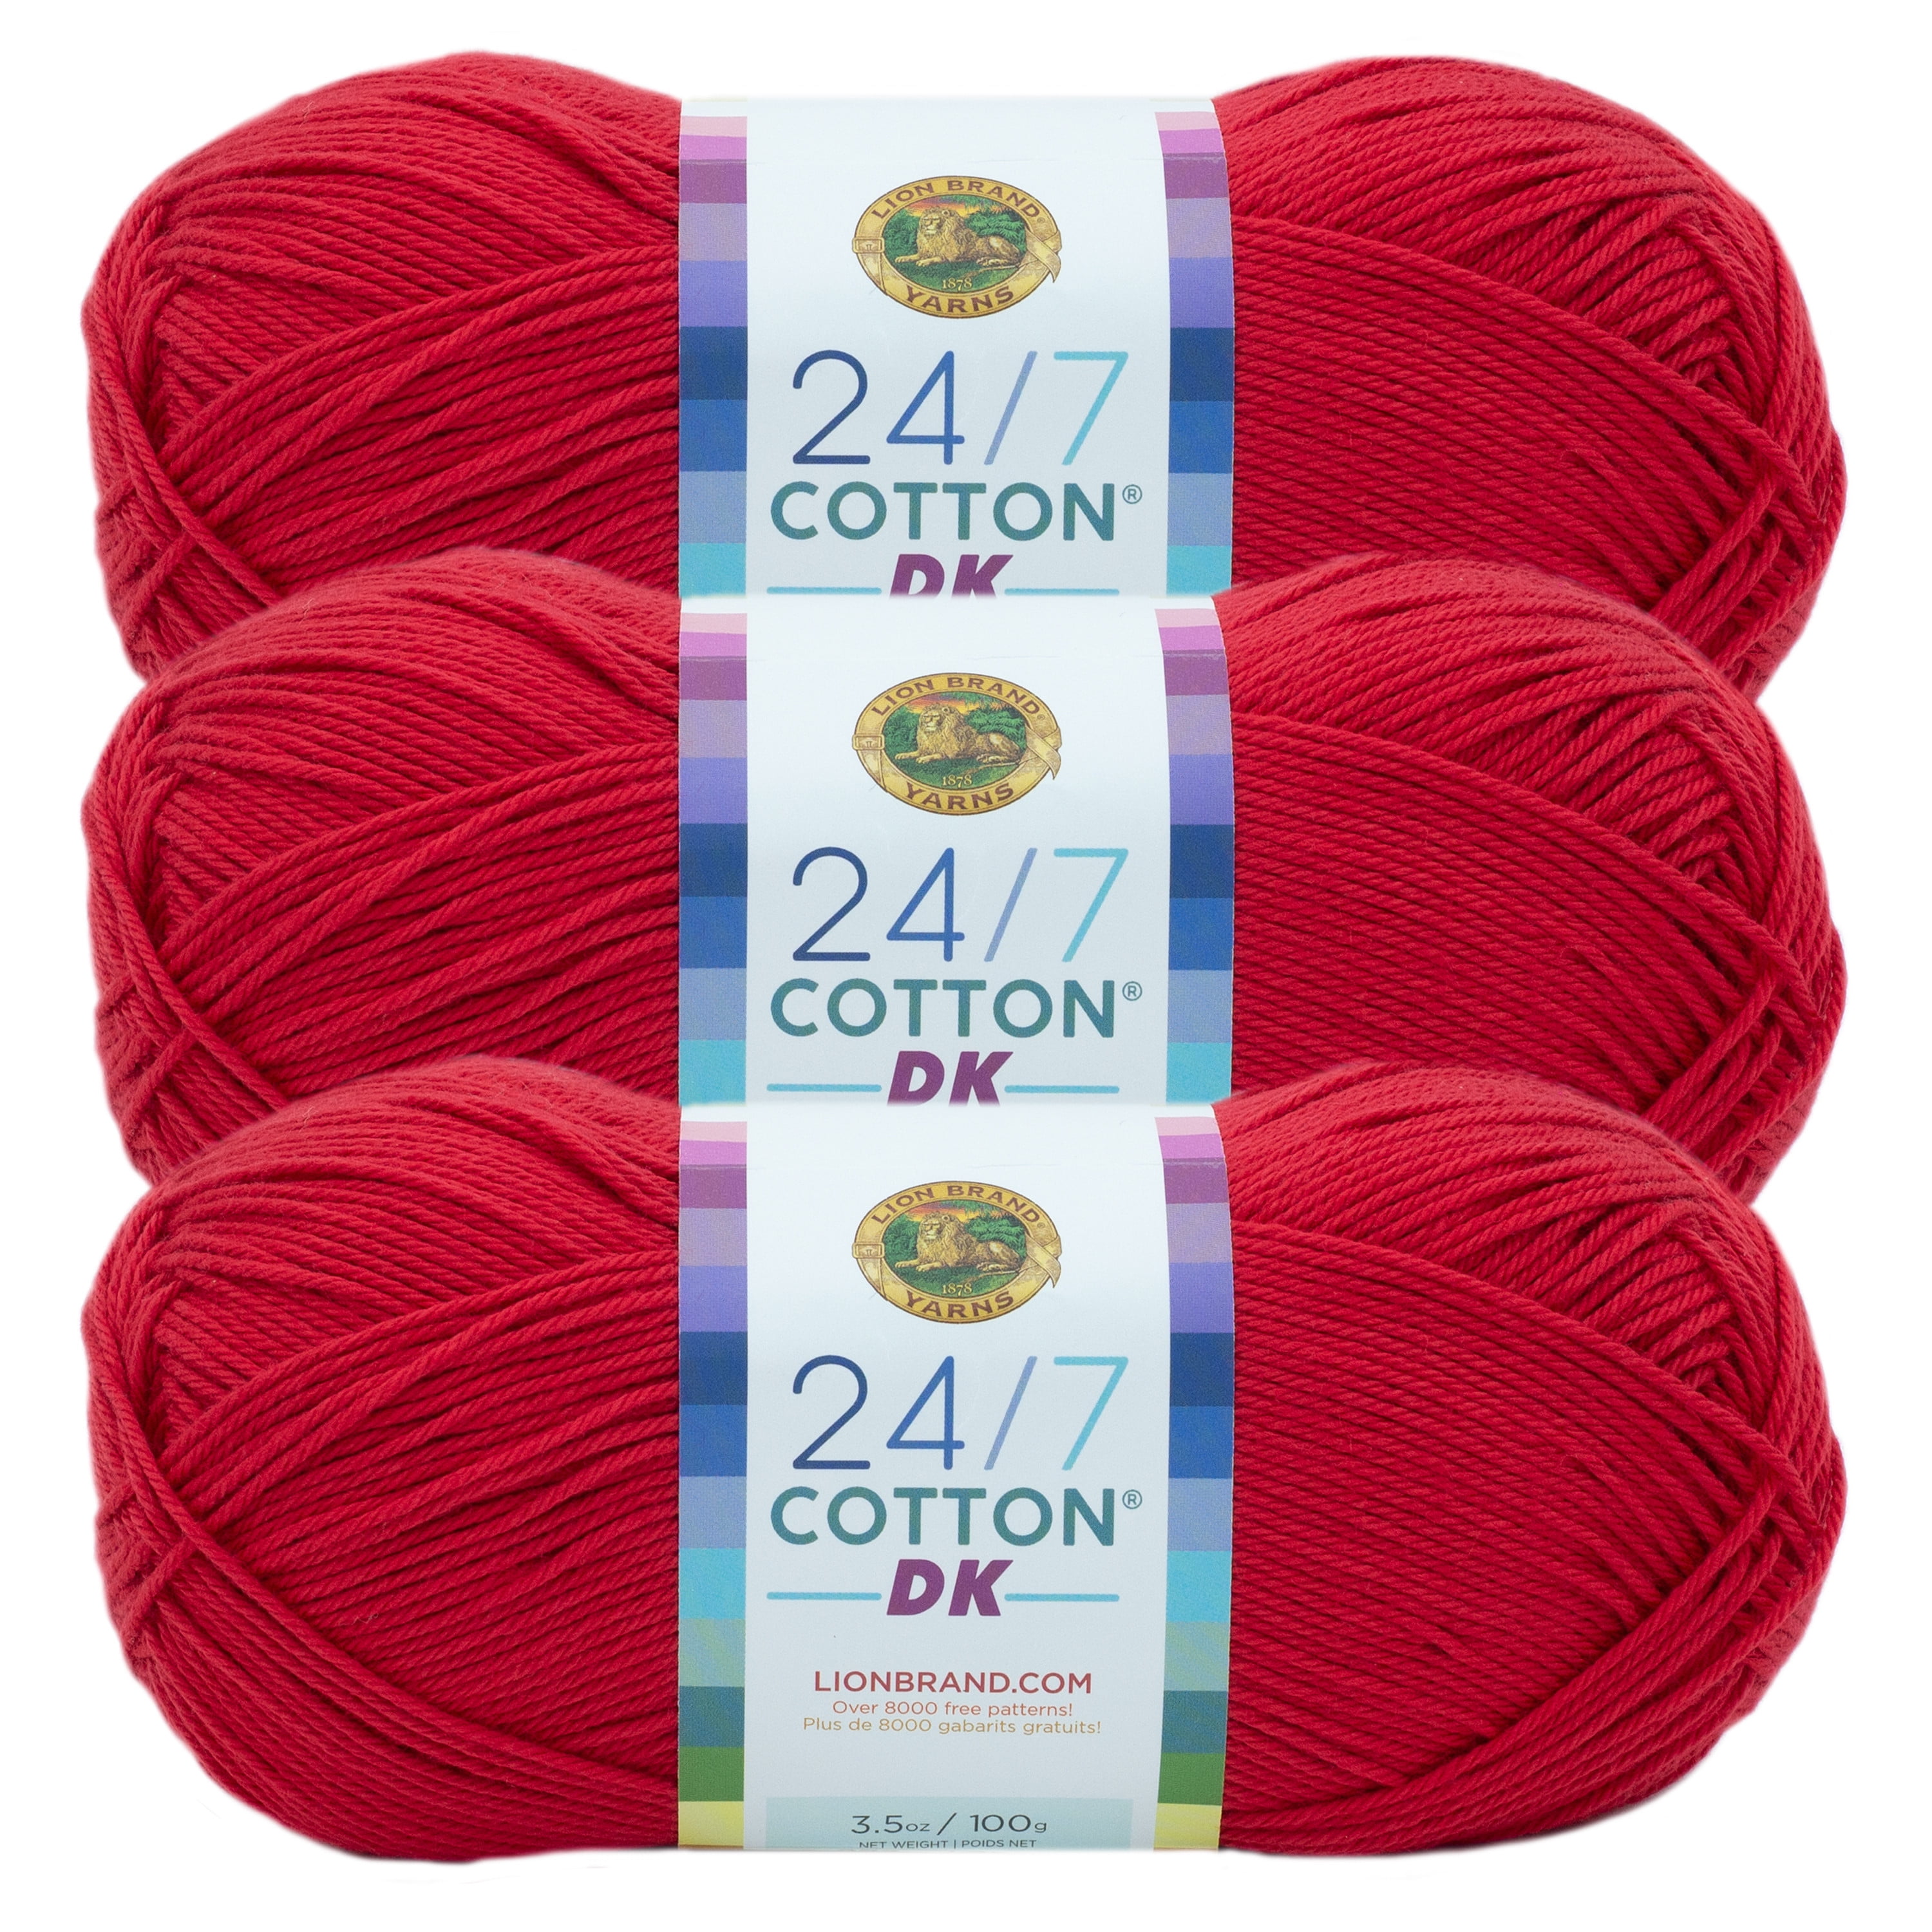 Lion Brand Yarn lion brand 24/7 cotton yarn, yarn for knitting